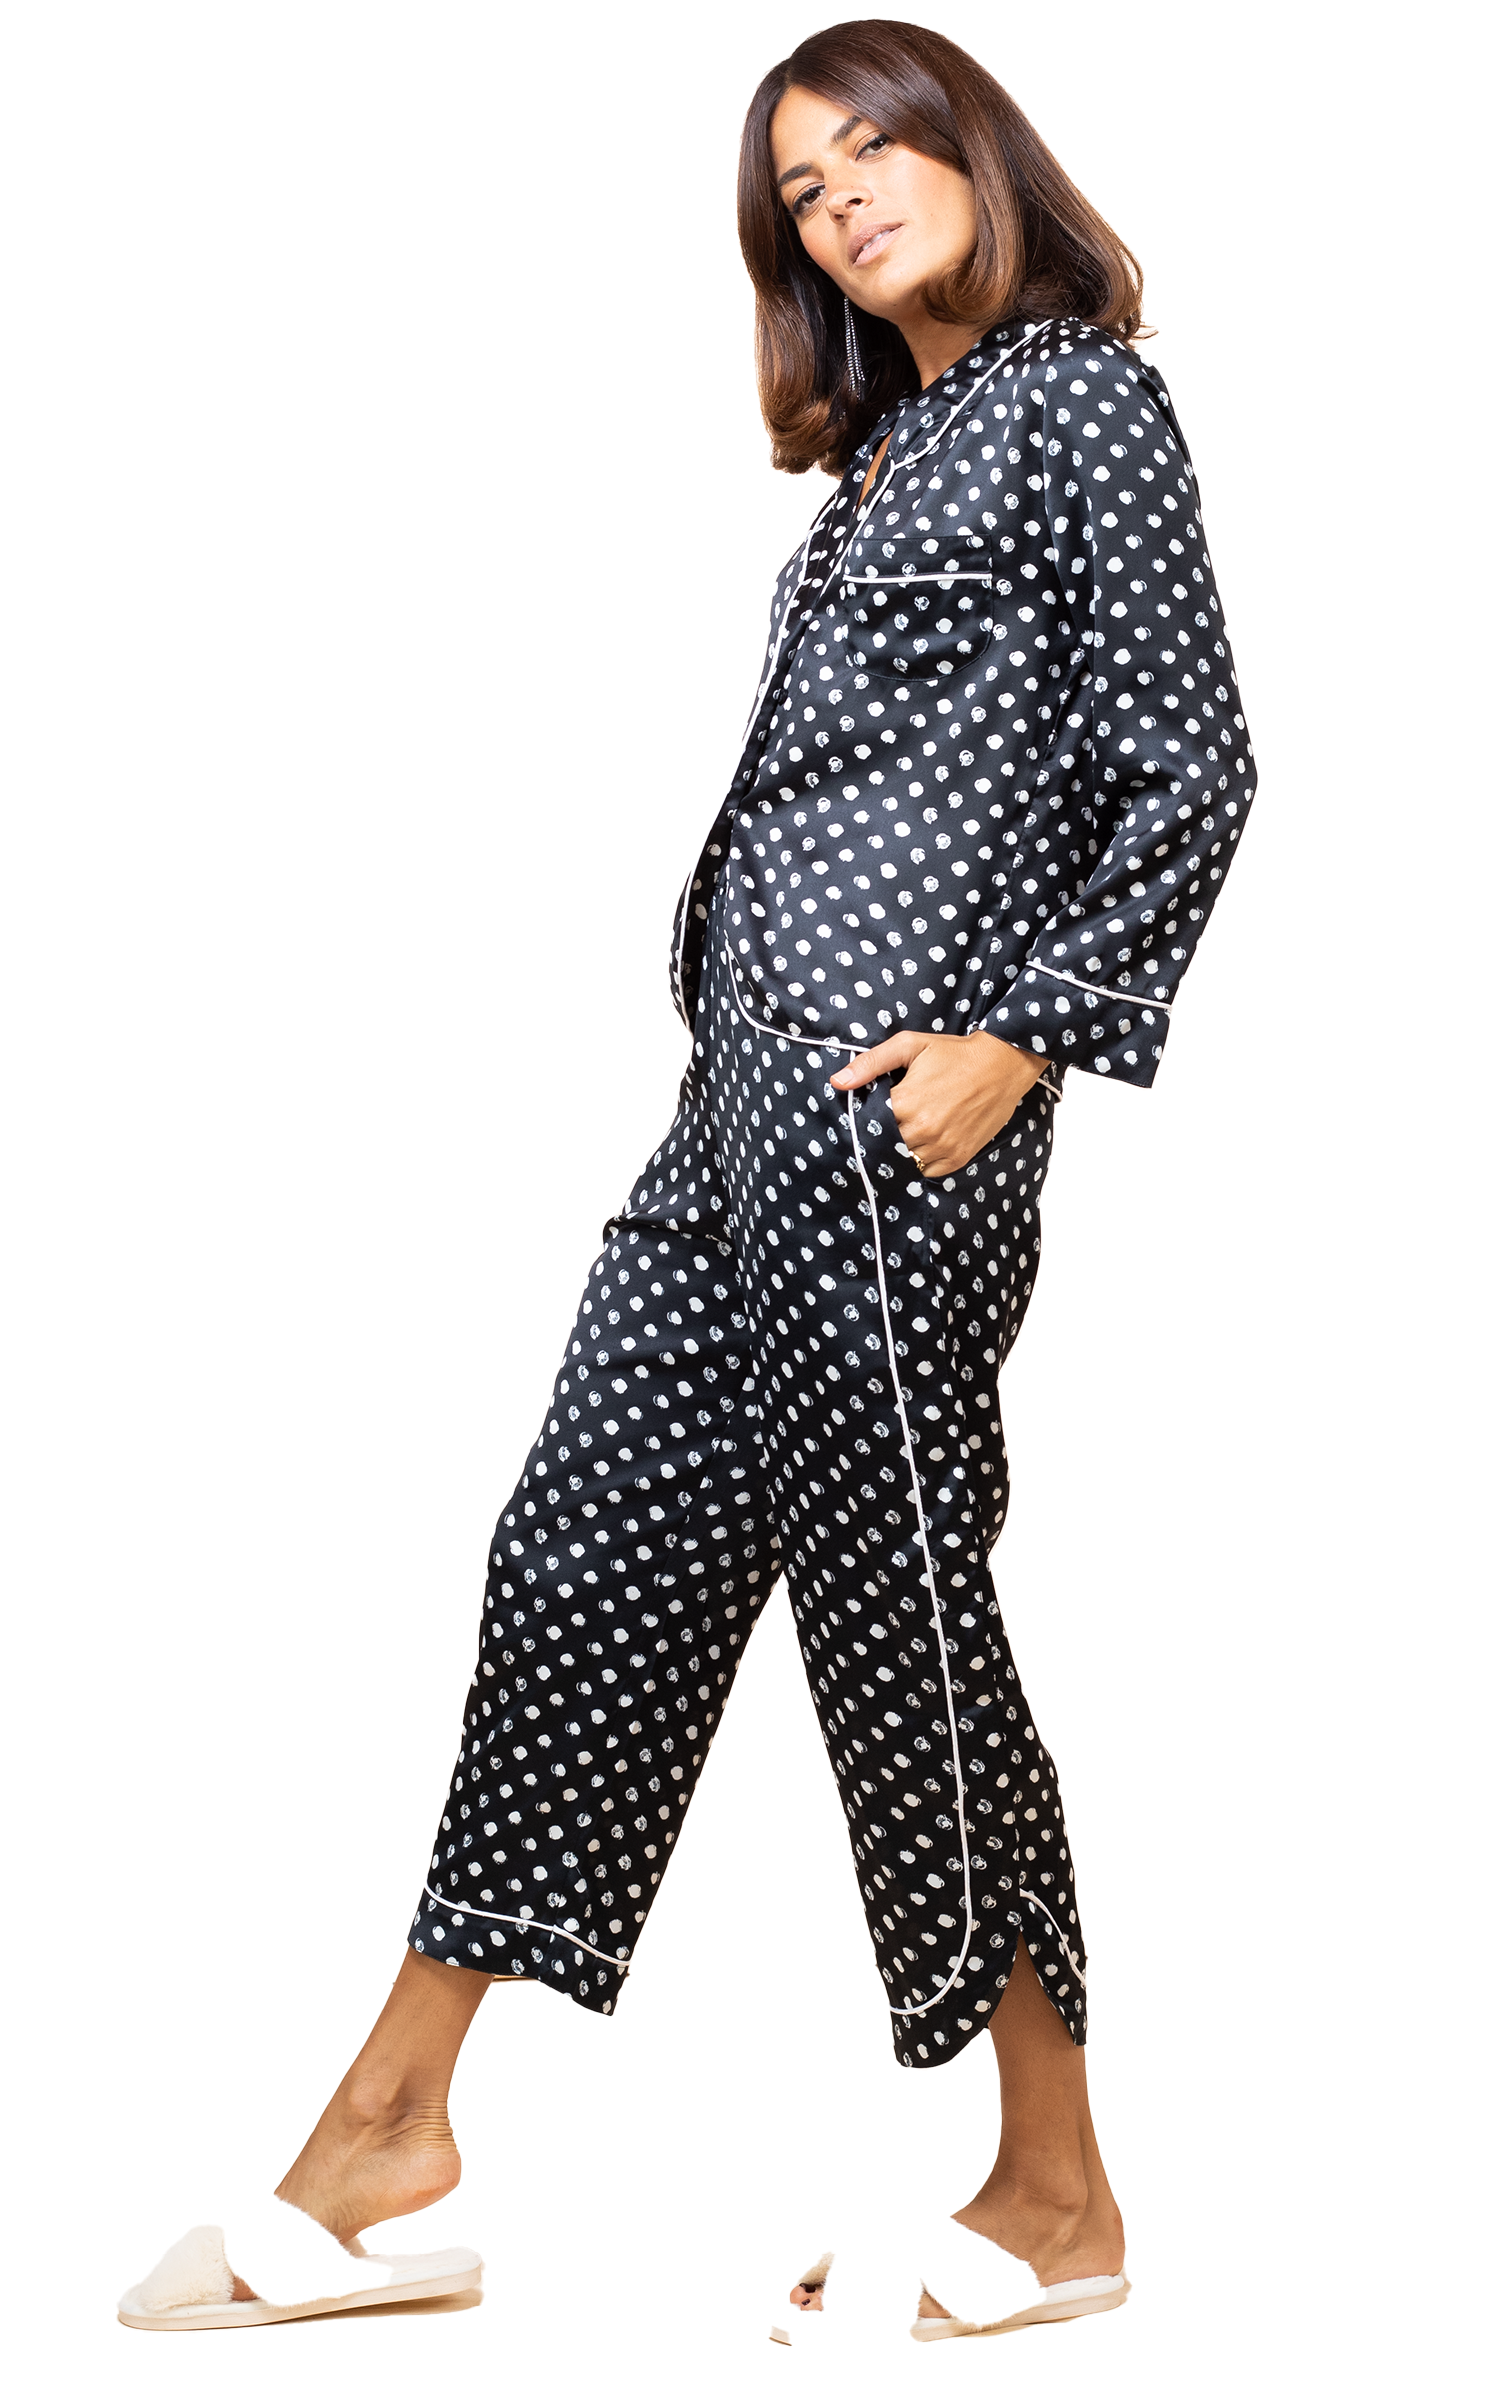 Σετ γυναικεία σατέν πιτζάμα με print πουά της Dancing Leopard